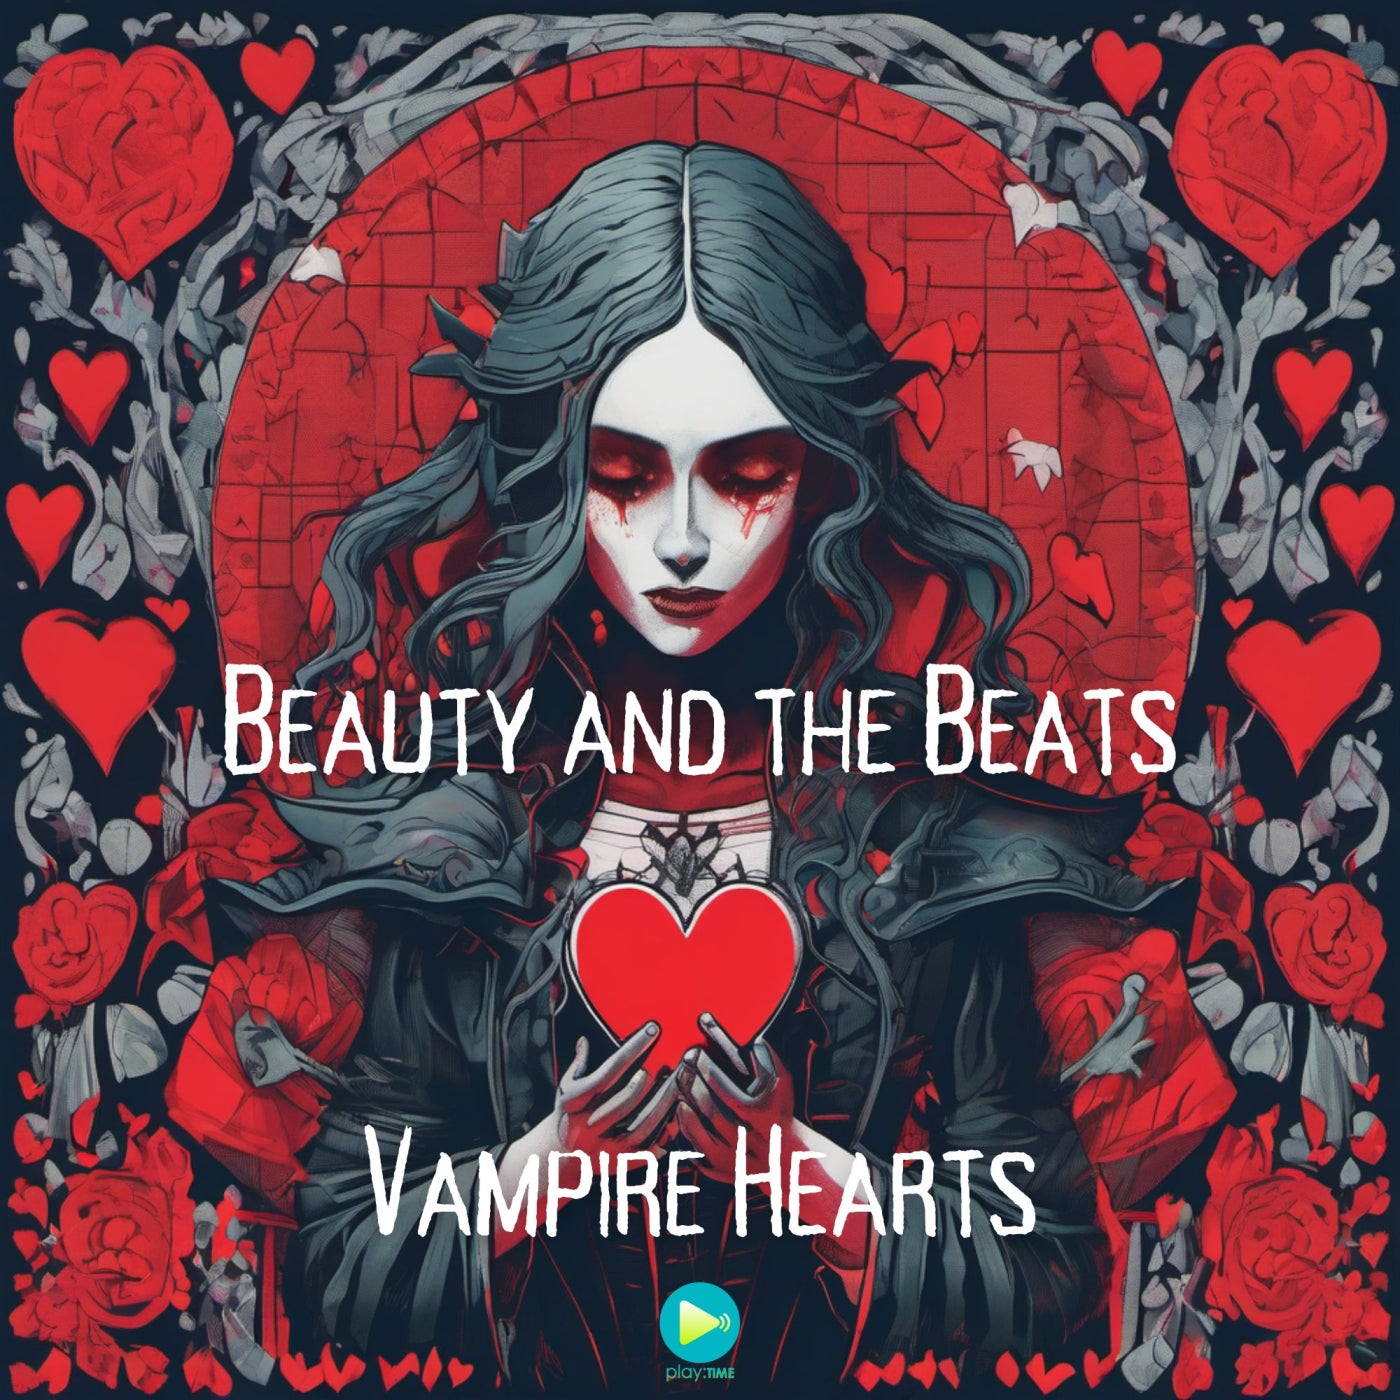 Vampire Hearts